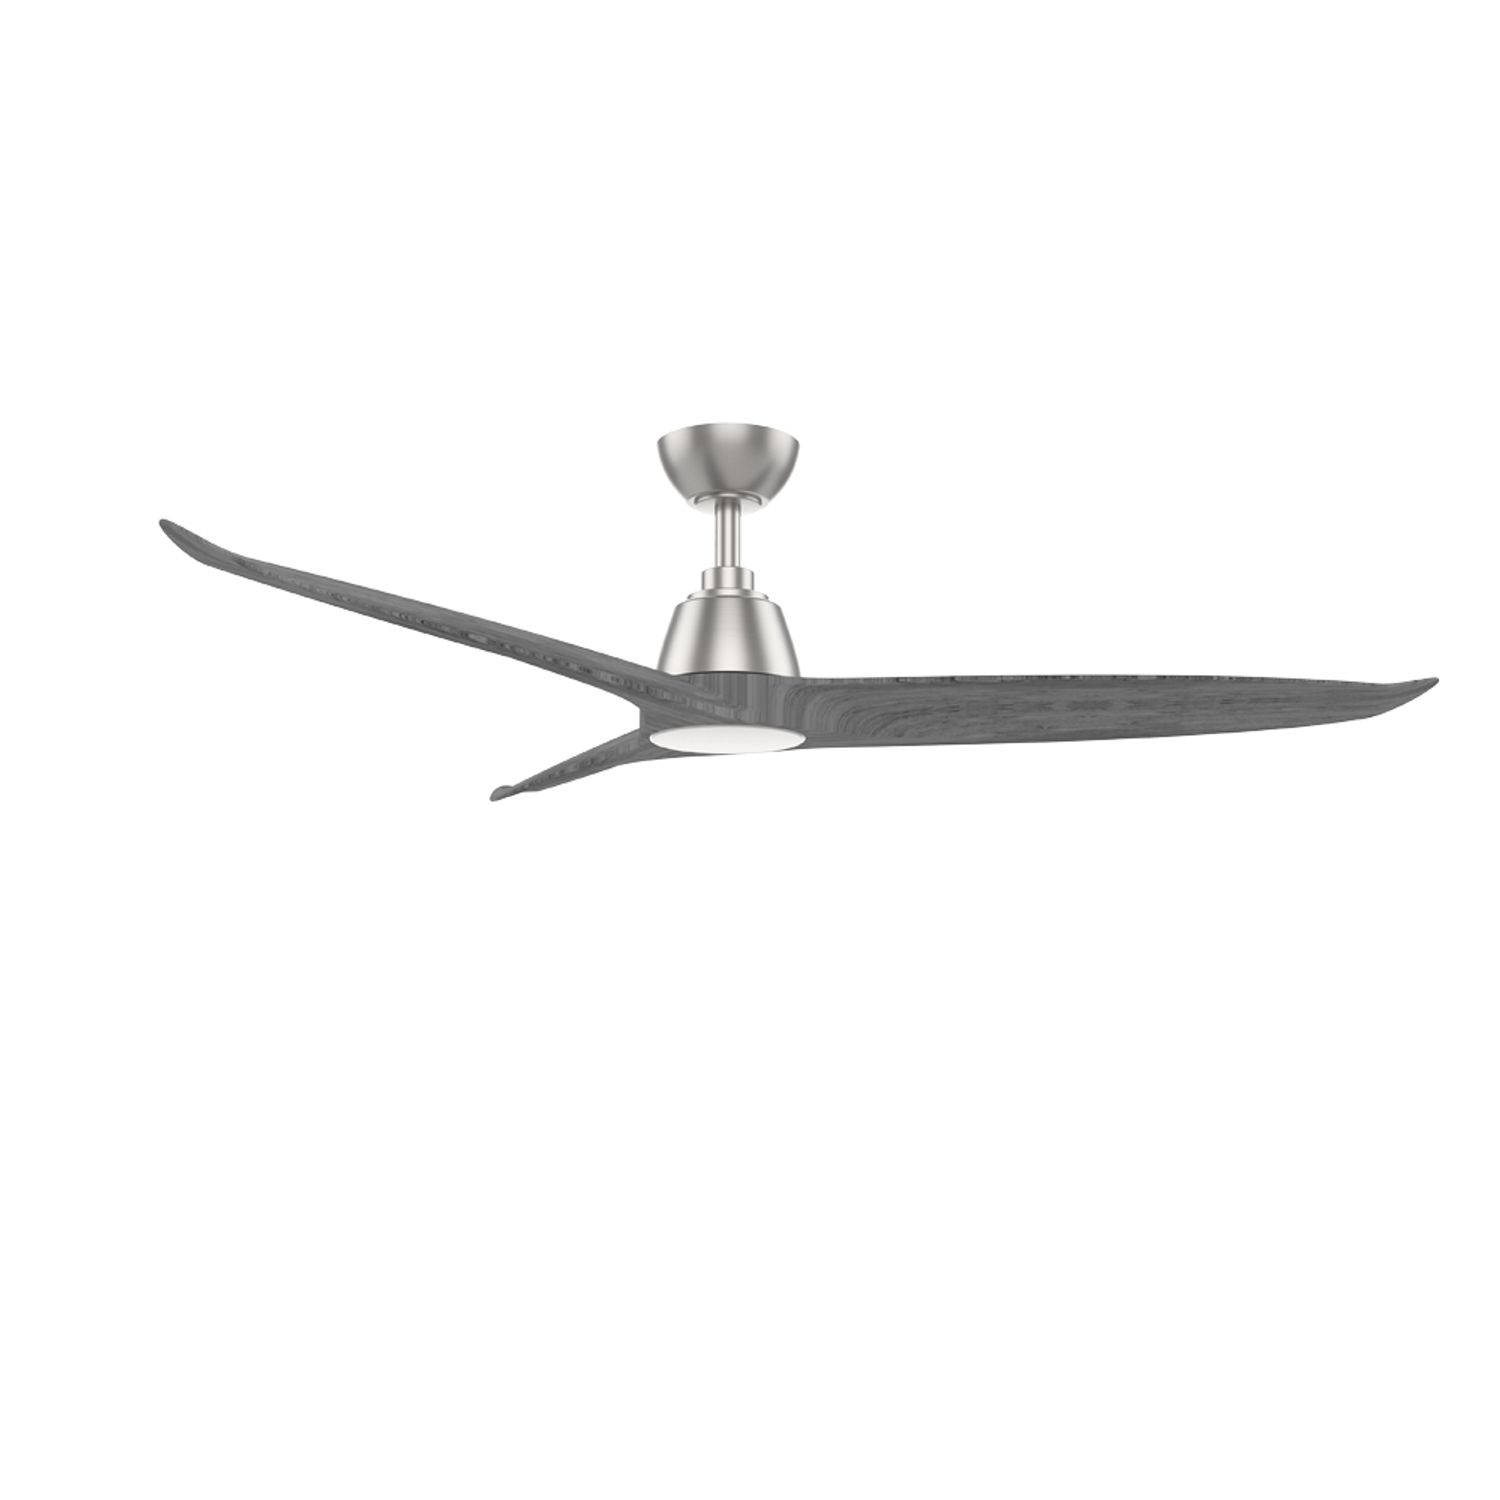 KBS gery real wood blade ceiling fan